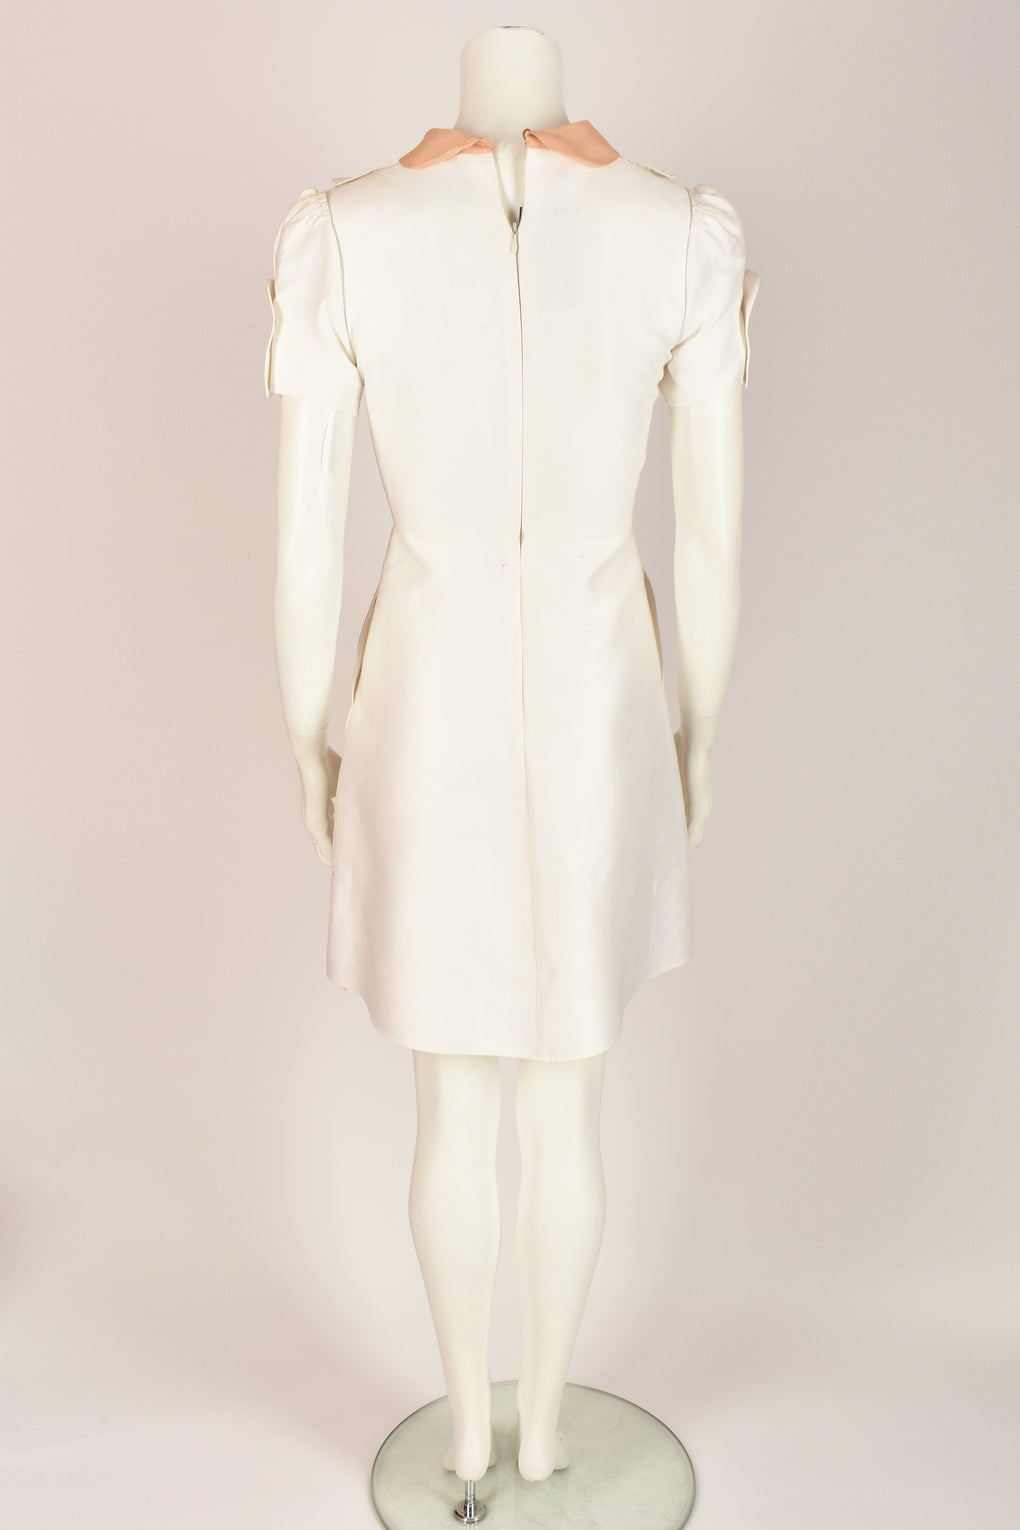 VALENTINO white bib dress S